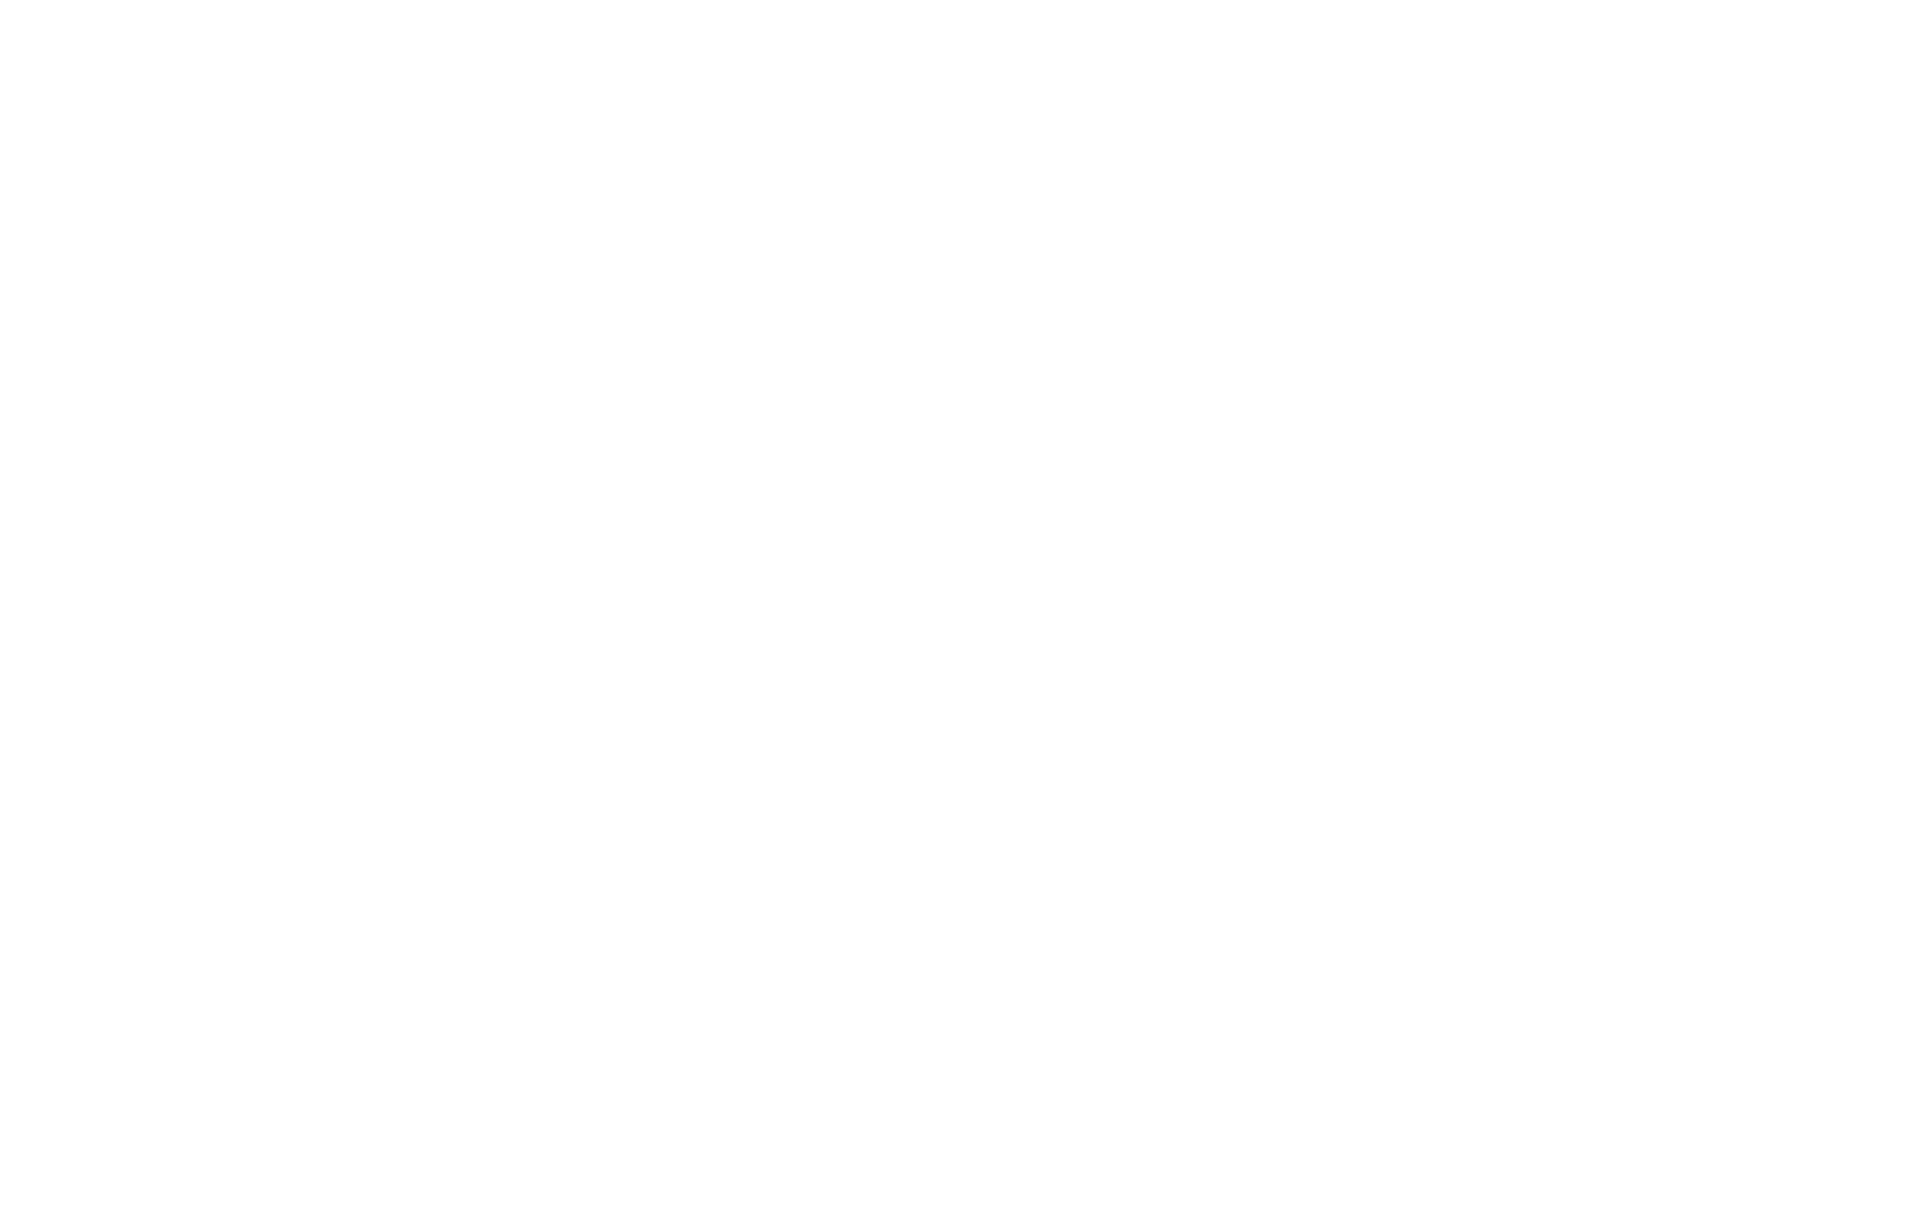 UBMD Orthopaedics & Sports Medicine Logo White